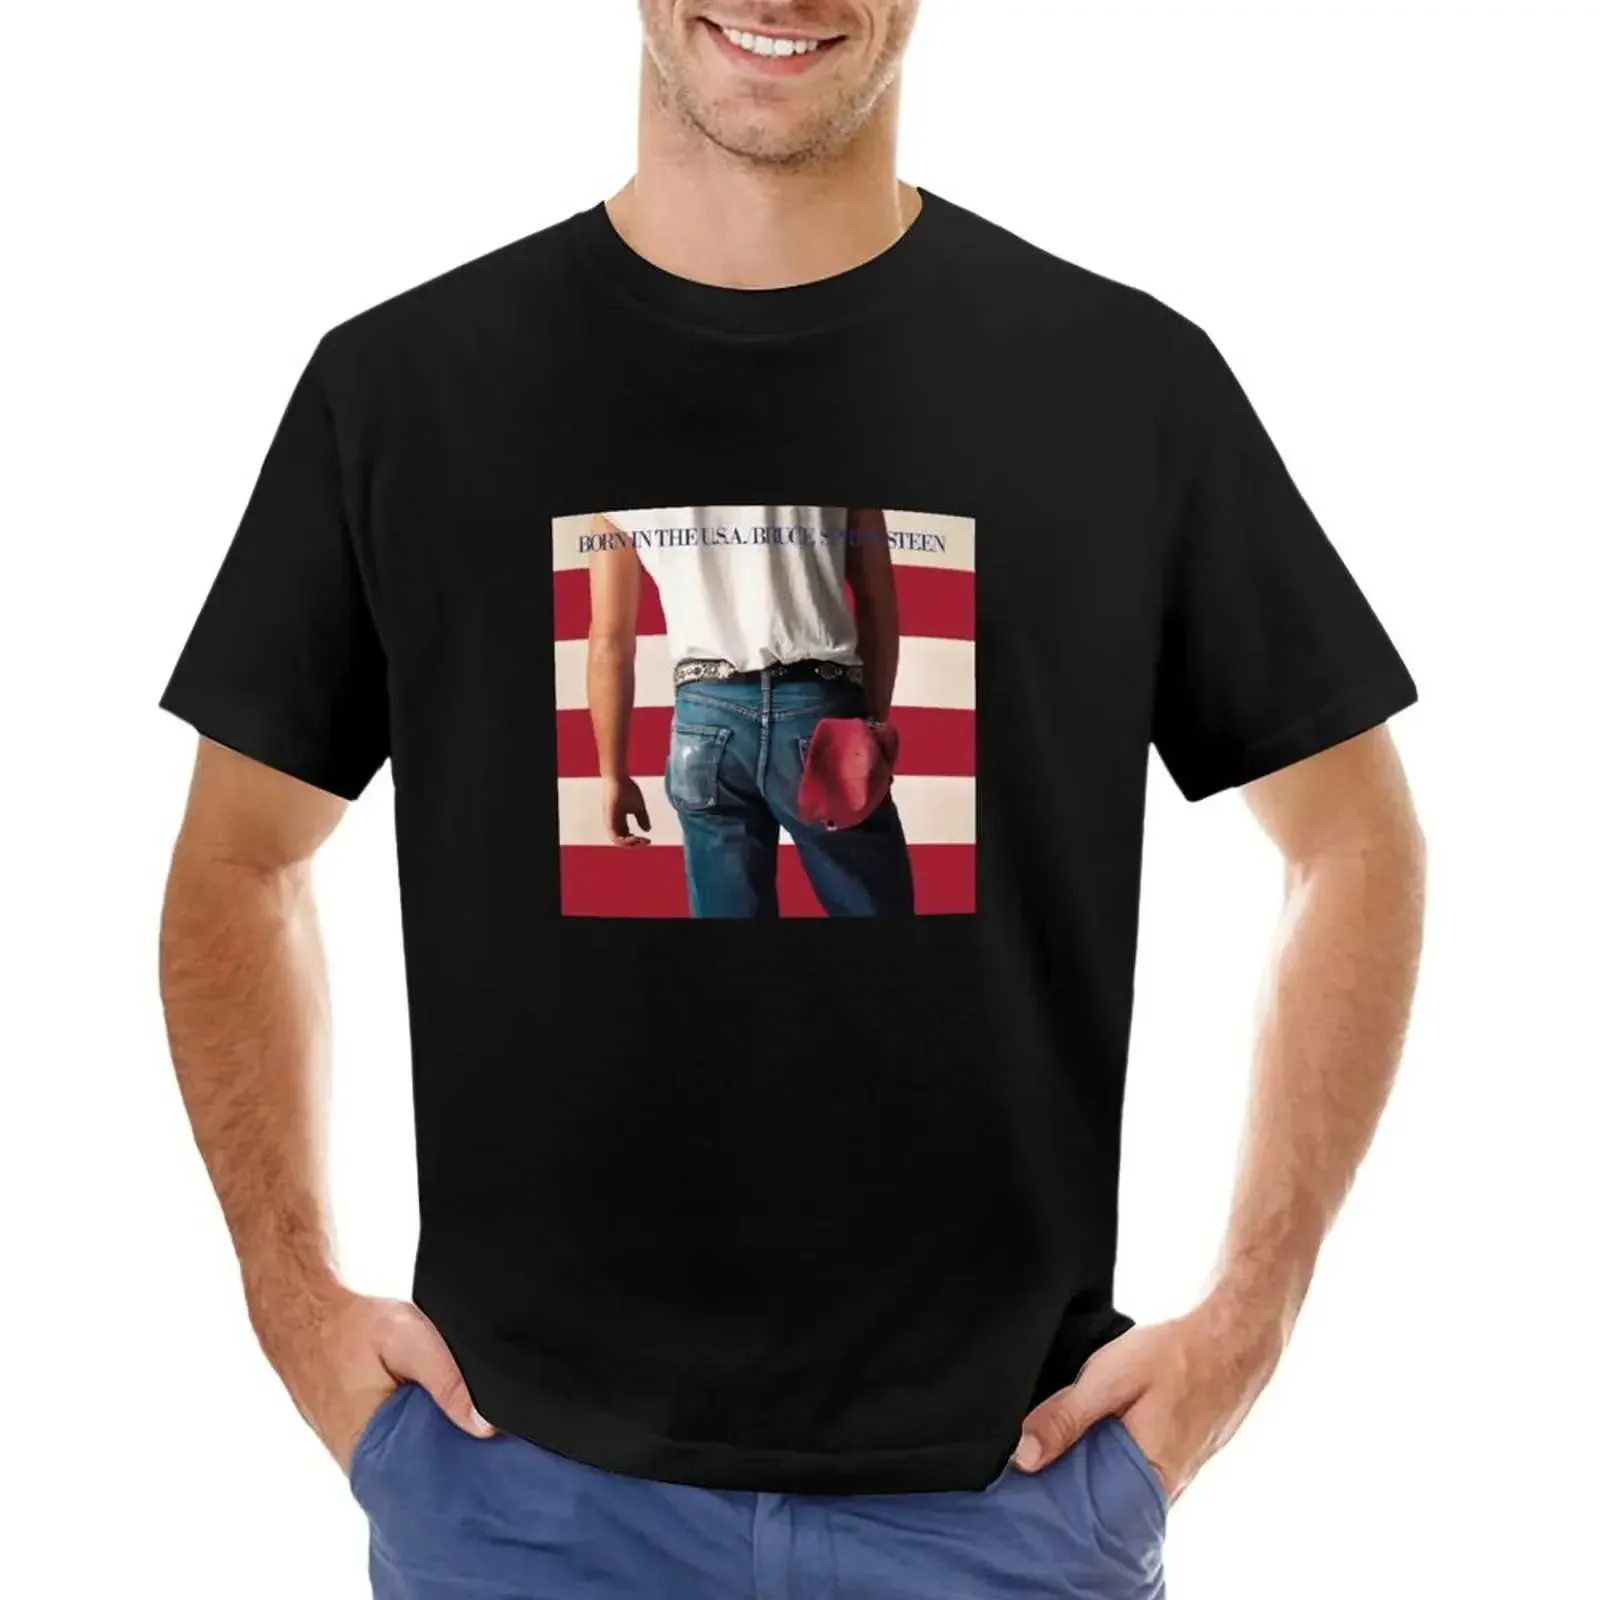 T-shirt maschile nate negli Stati Uniti Abbigliamento estivo ragazzo Amata di stampa antage adatto per Mens T-Shirtsl2405